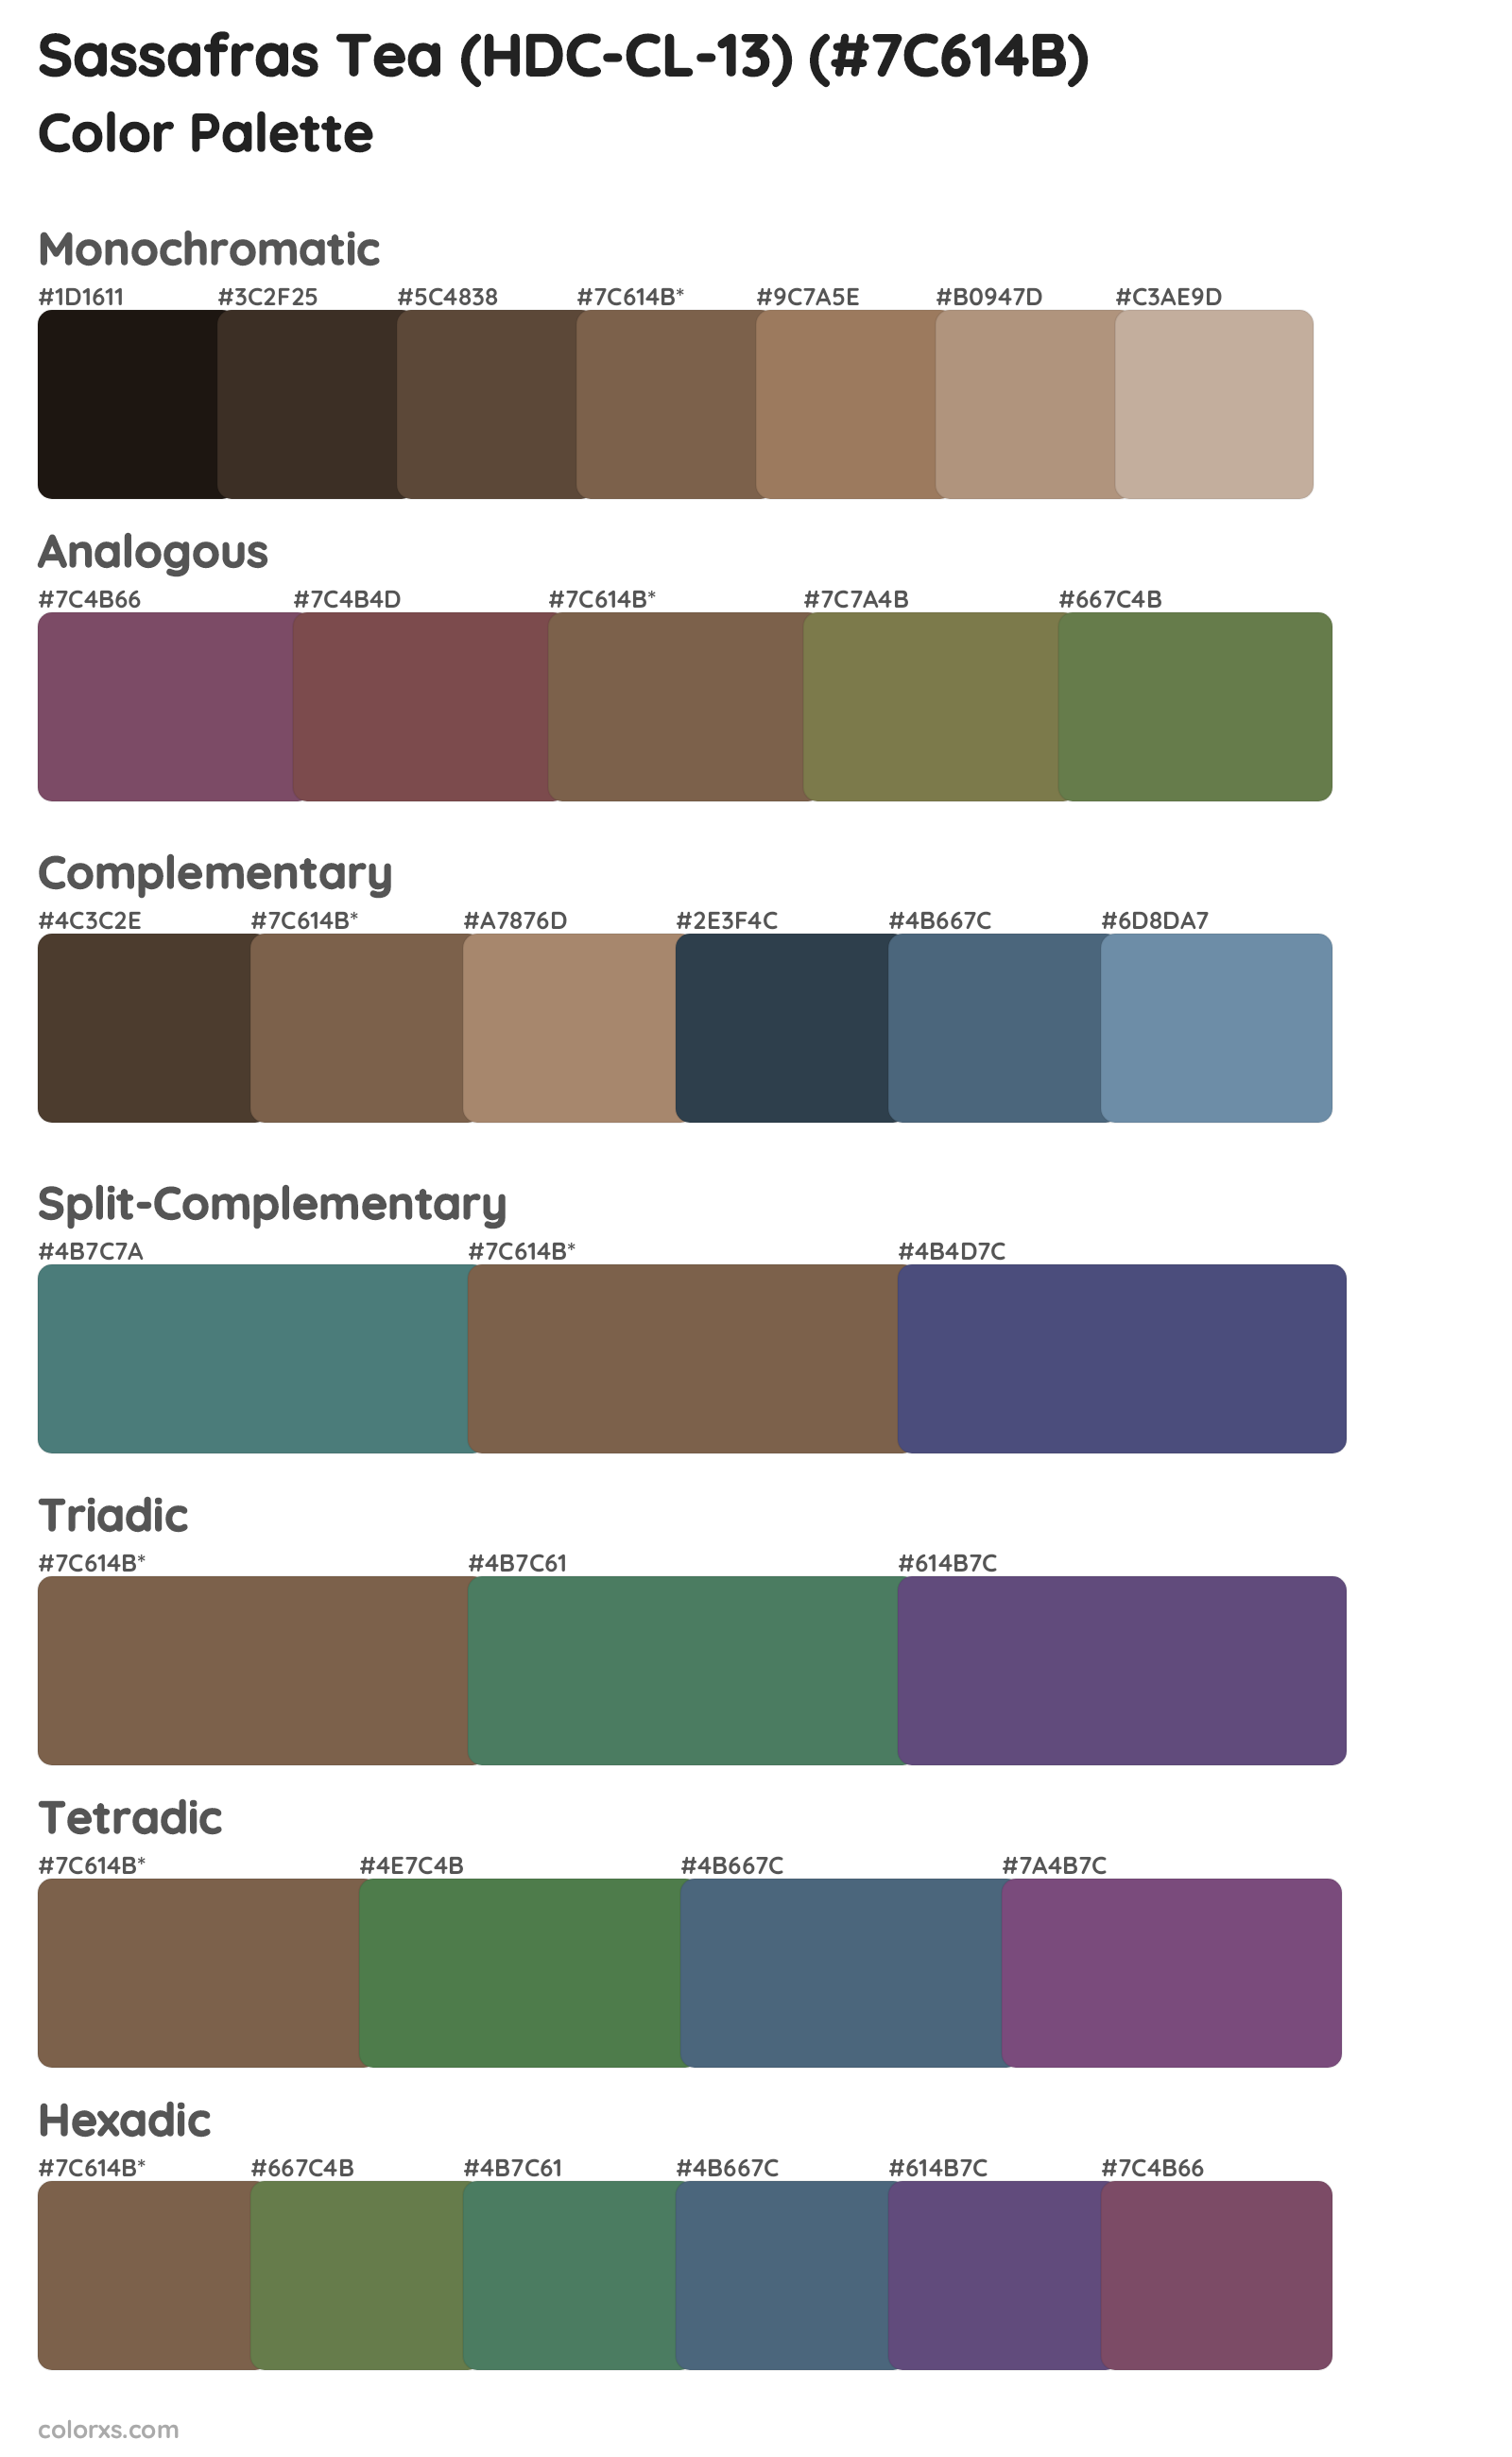 Sassafras Tea (HDC-CL-13) Color Scheme Palettes